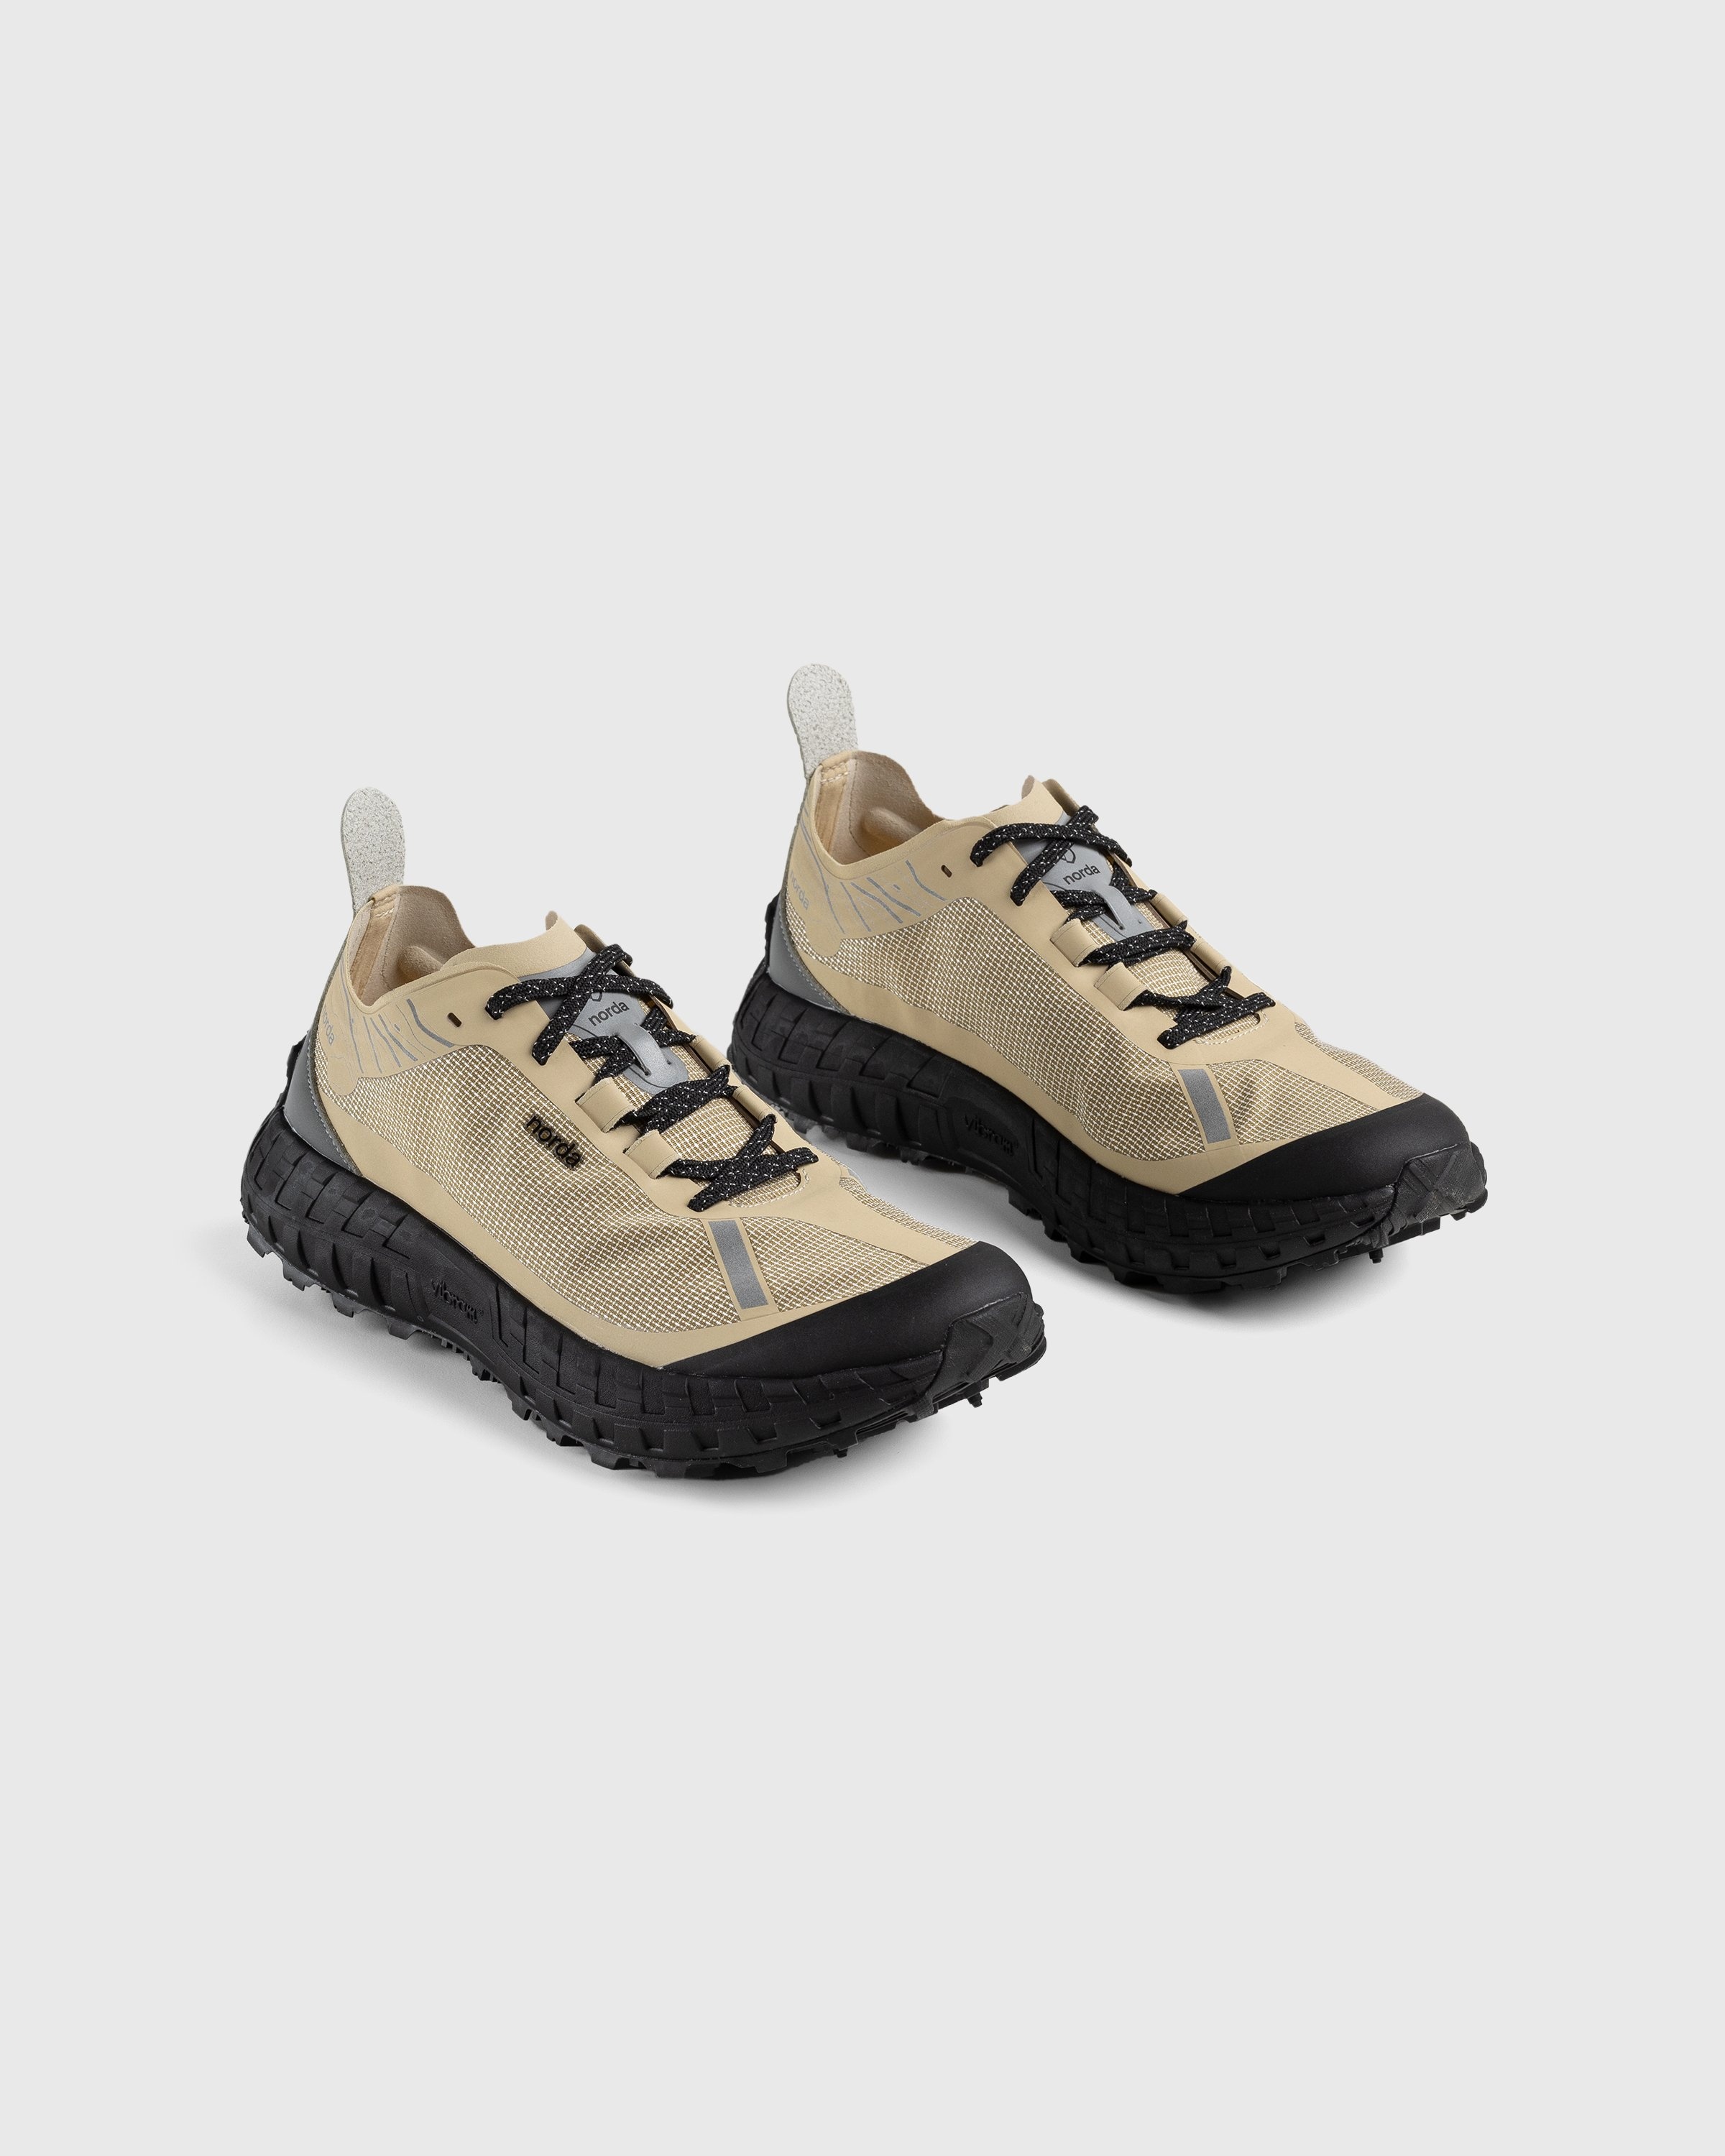 Norda – 001 M Pebble - Sneakers - Brown - Image 3